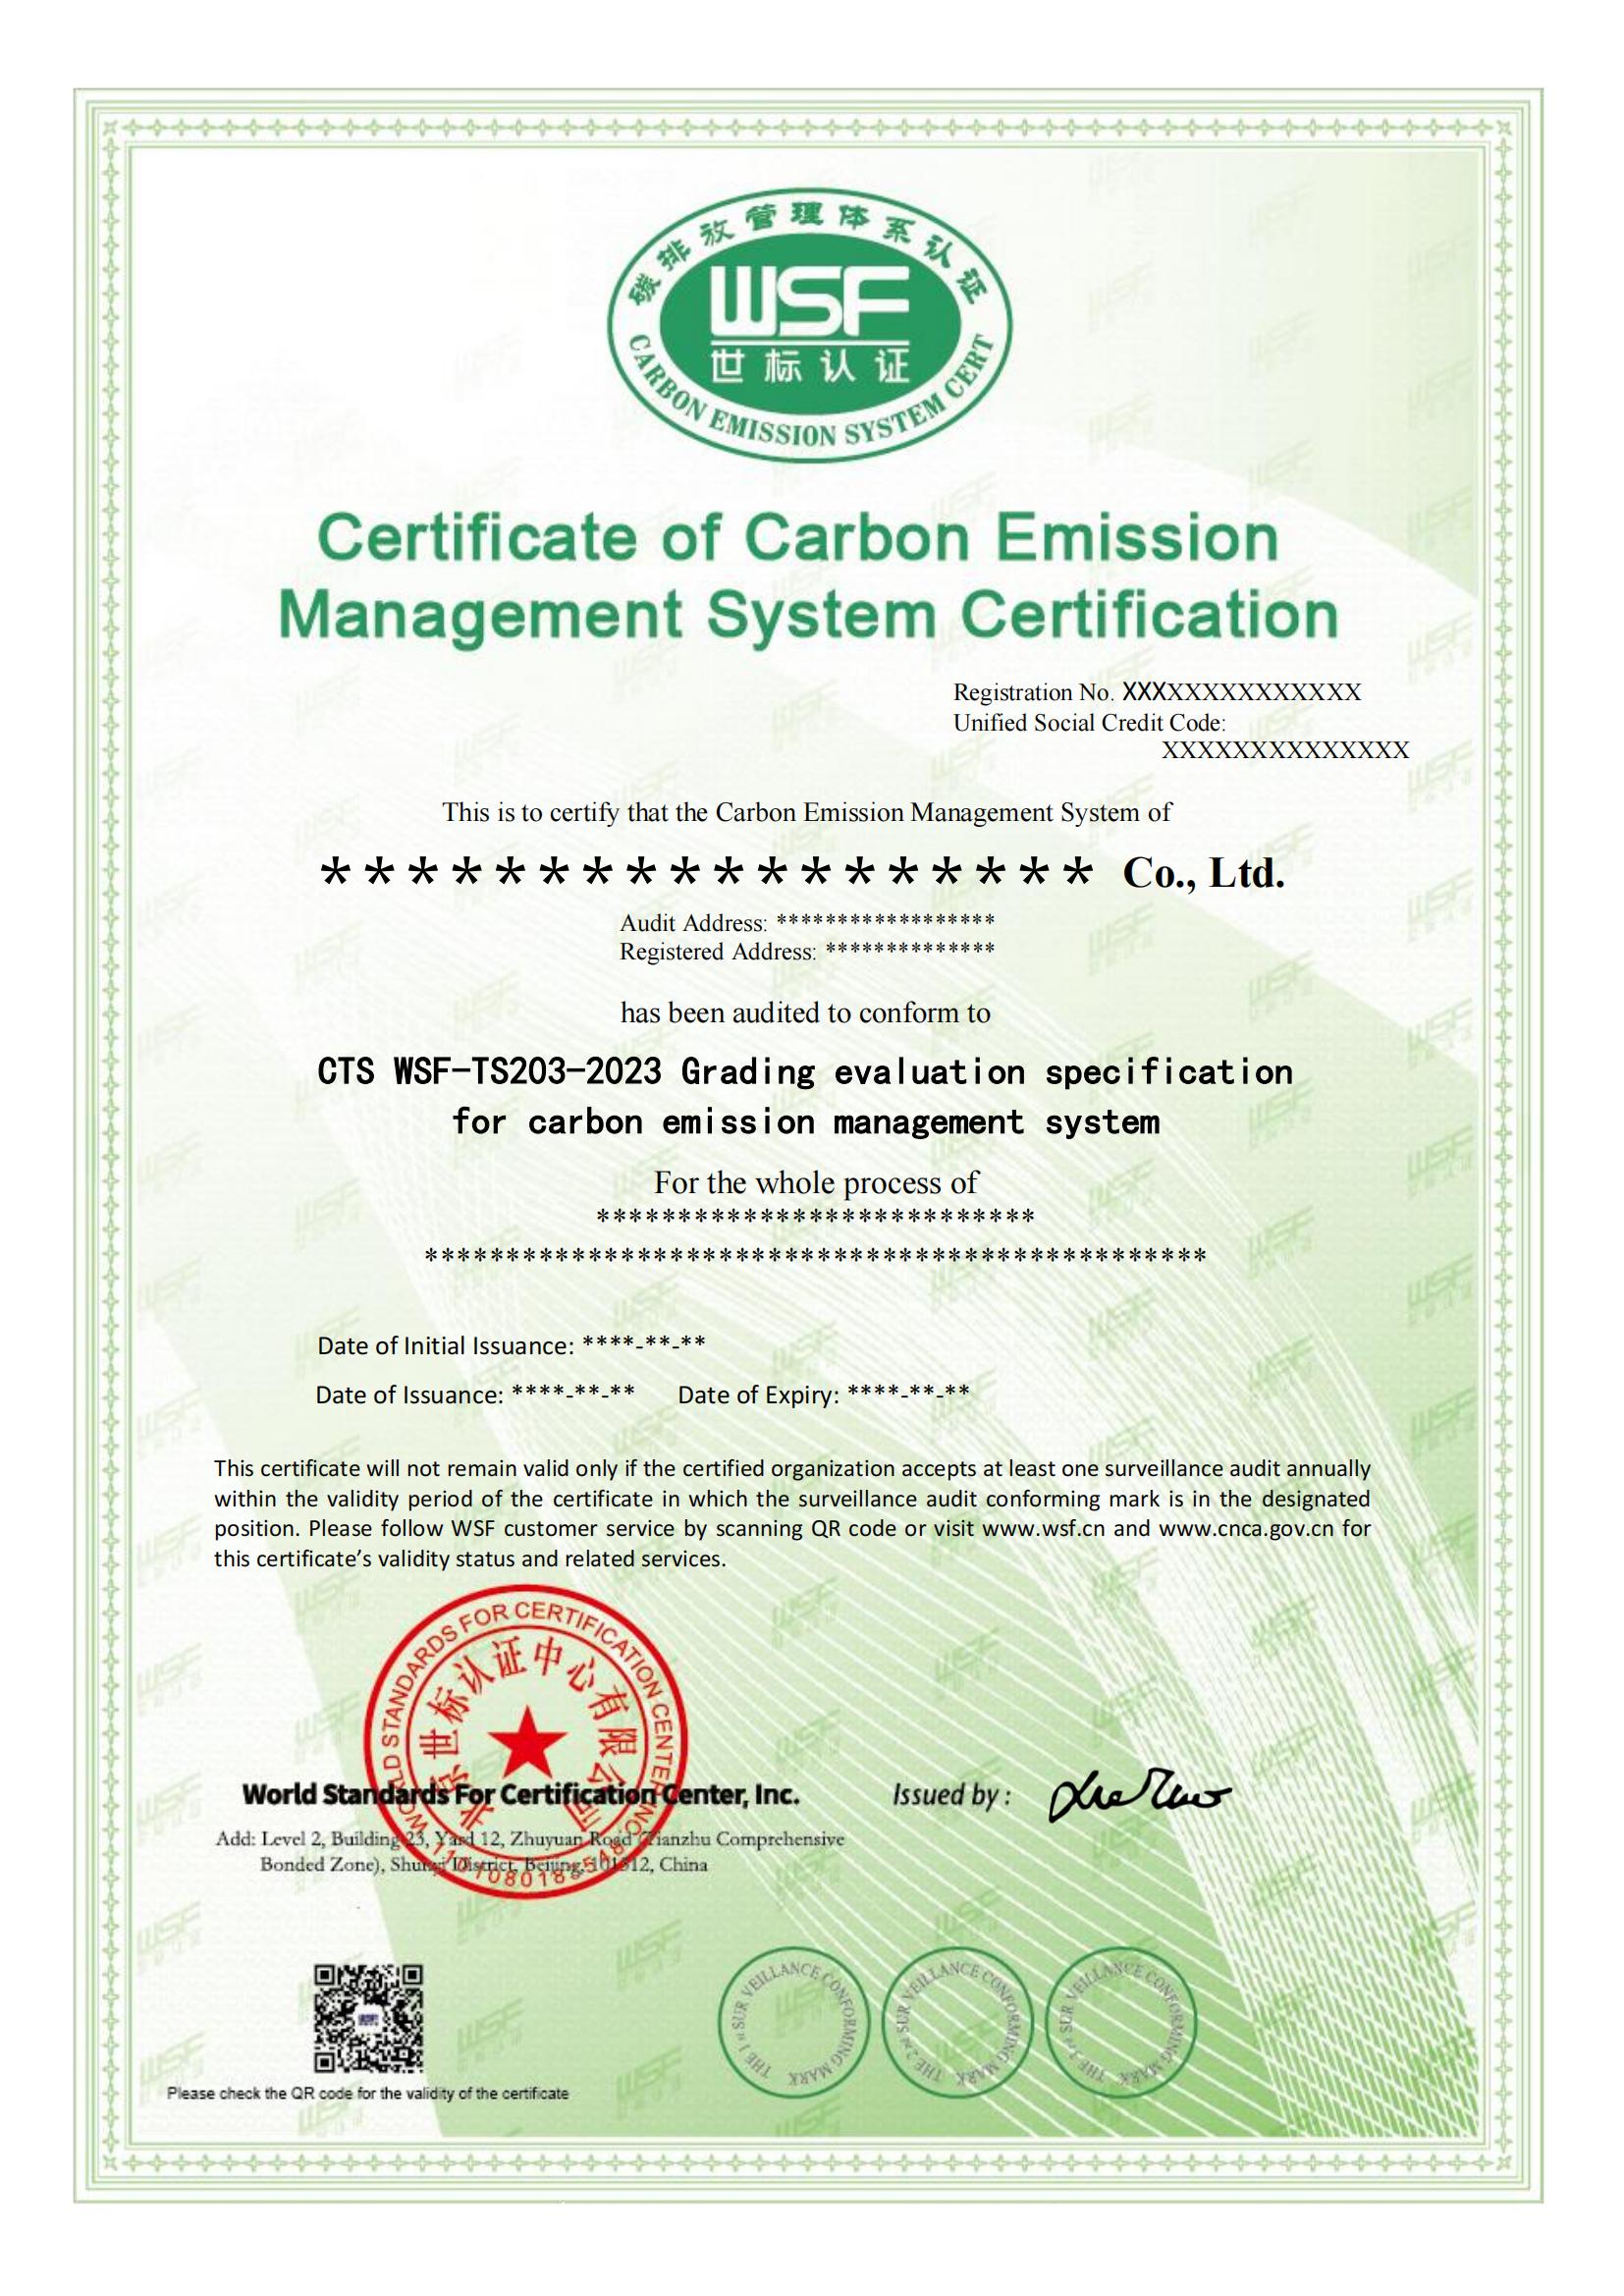 碳排放证书样本-英文_00.jpg